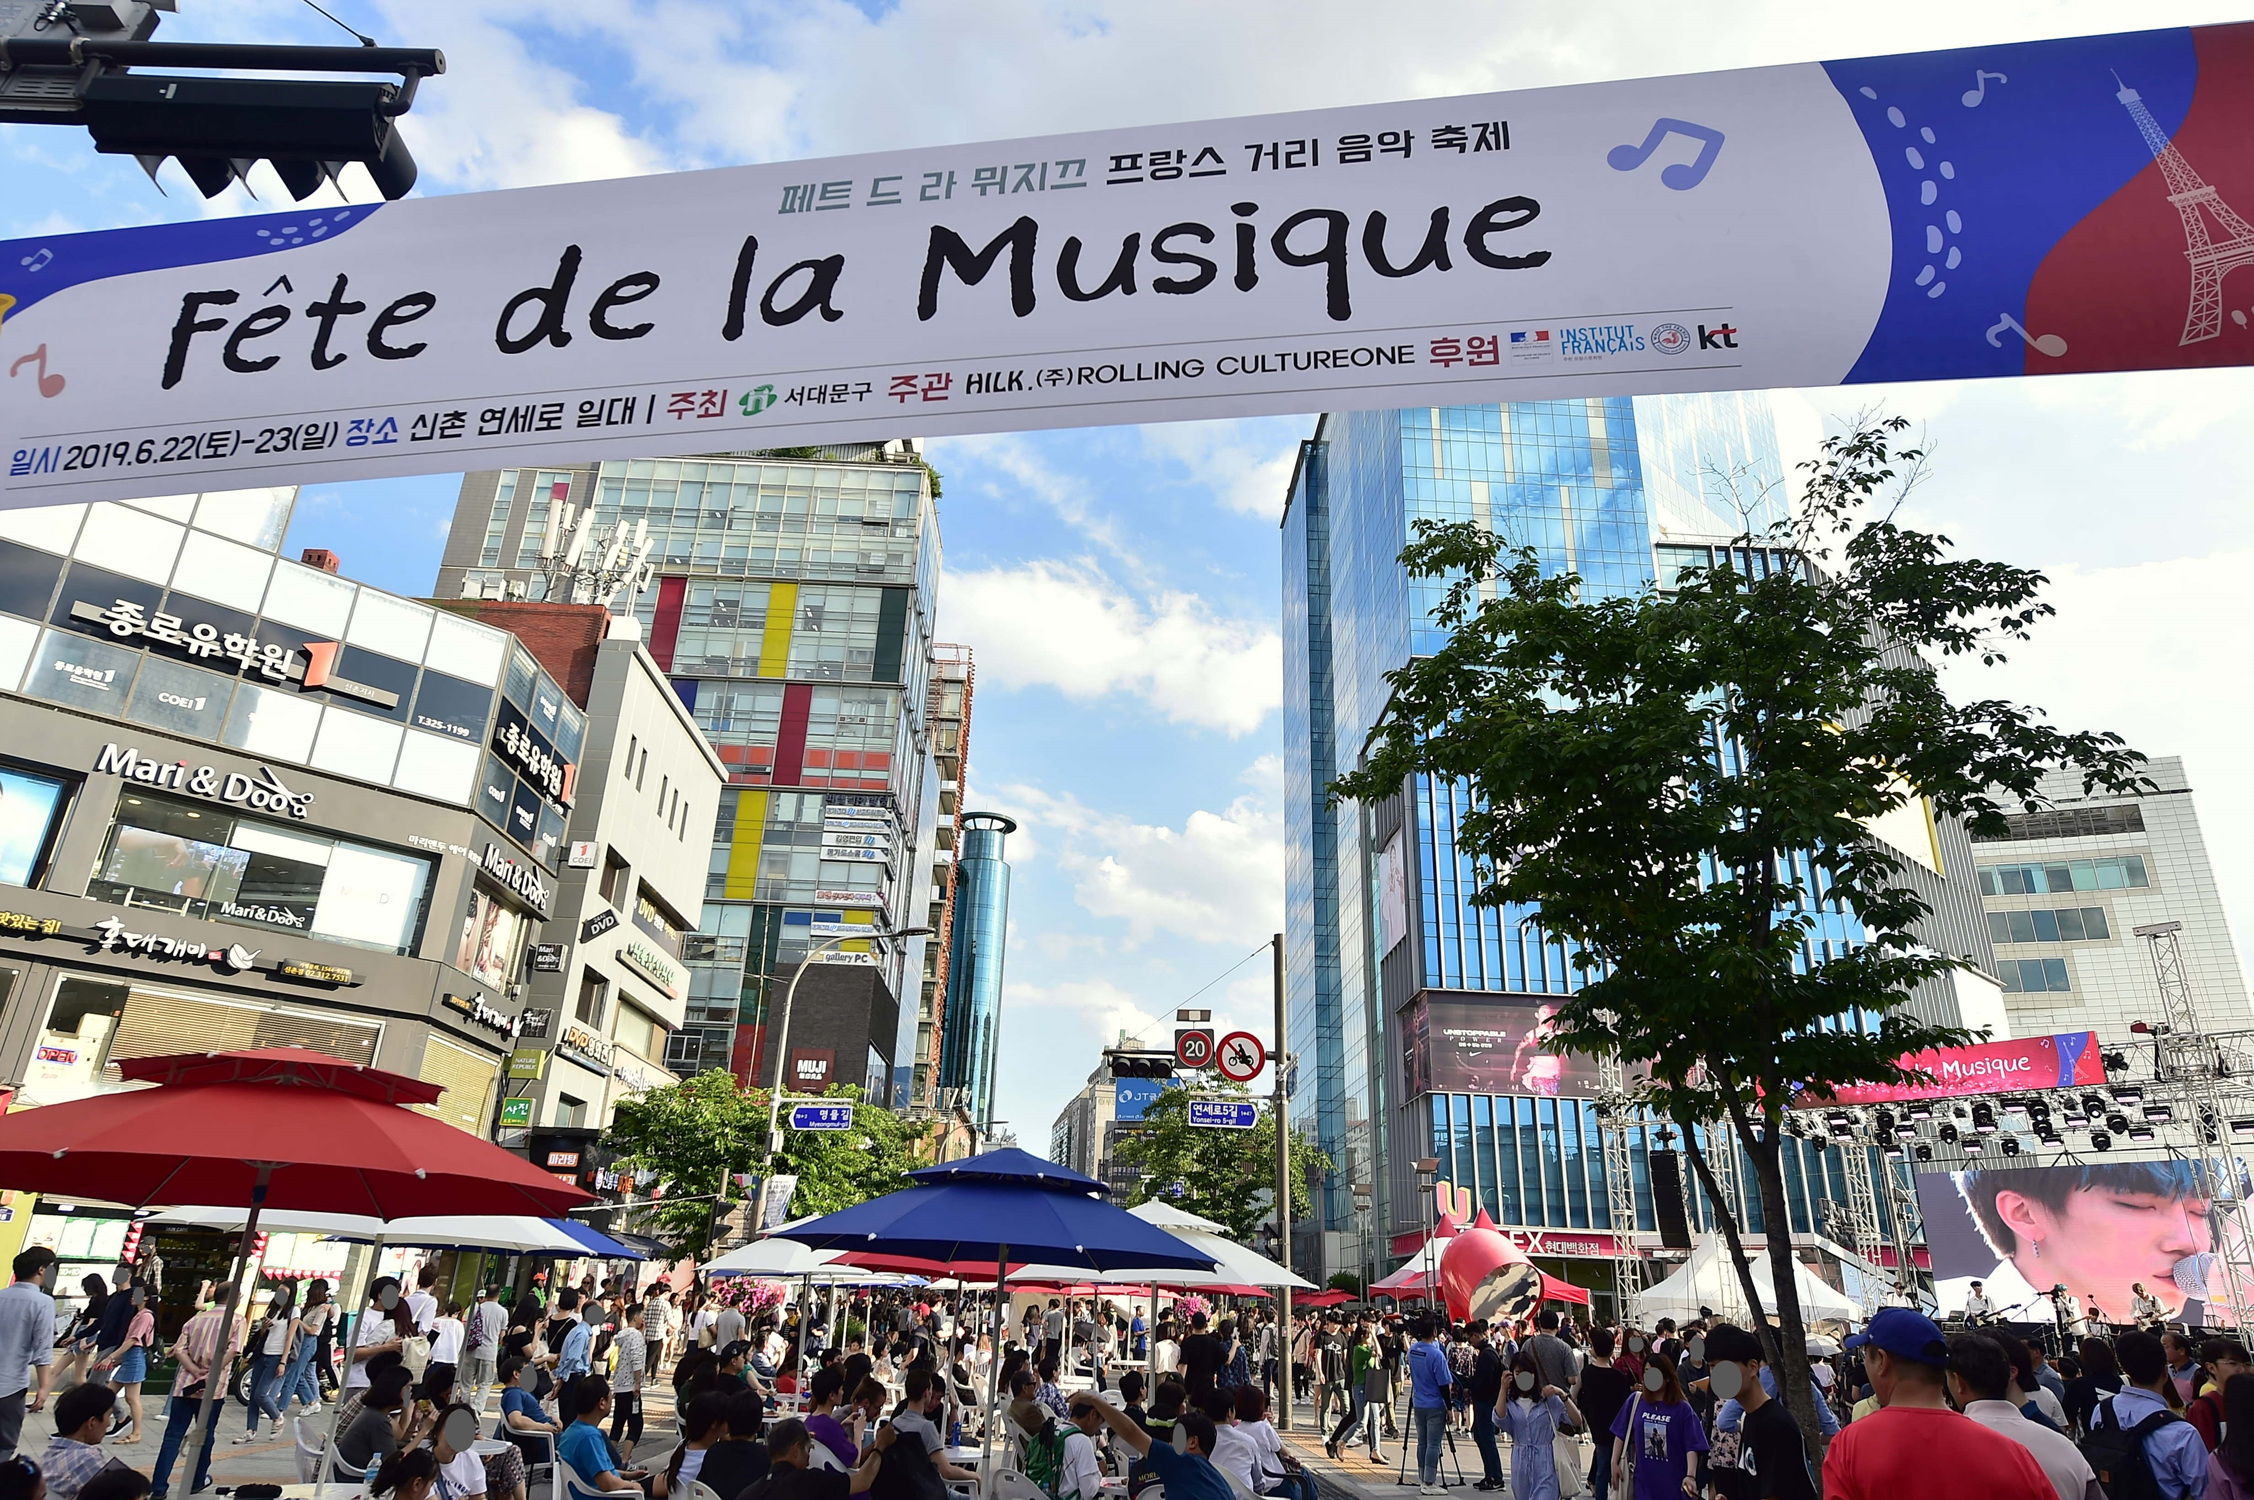 서울 서대문구가 2019년 서대문구 신촌 연세로에서 개최한 프랑스 음악 축제의 모습. 올해는 온라인에서 진행된다. 서대문구 제공